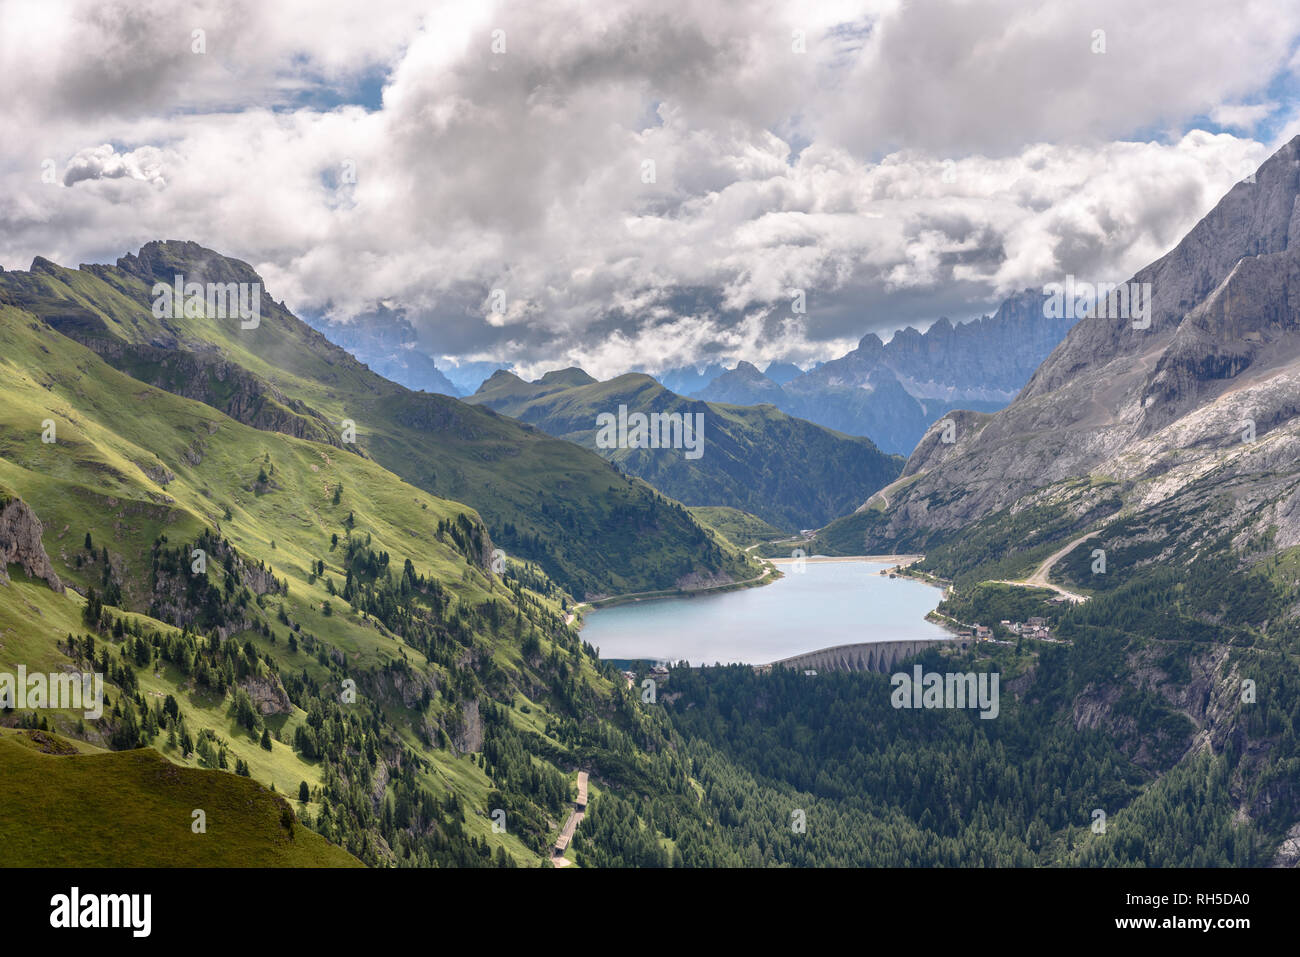 Lago di Fedaia in the Dolomites with Monte Civetta in the distance Stock Photo